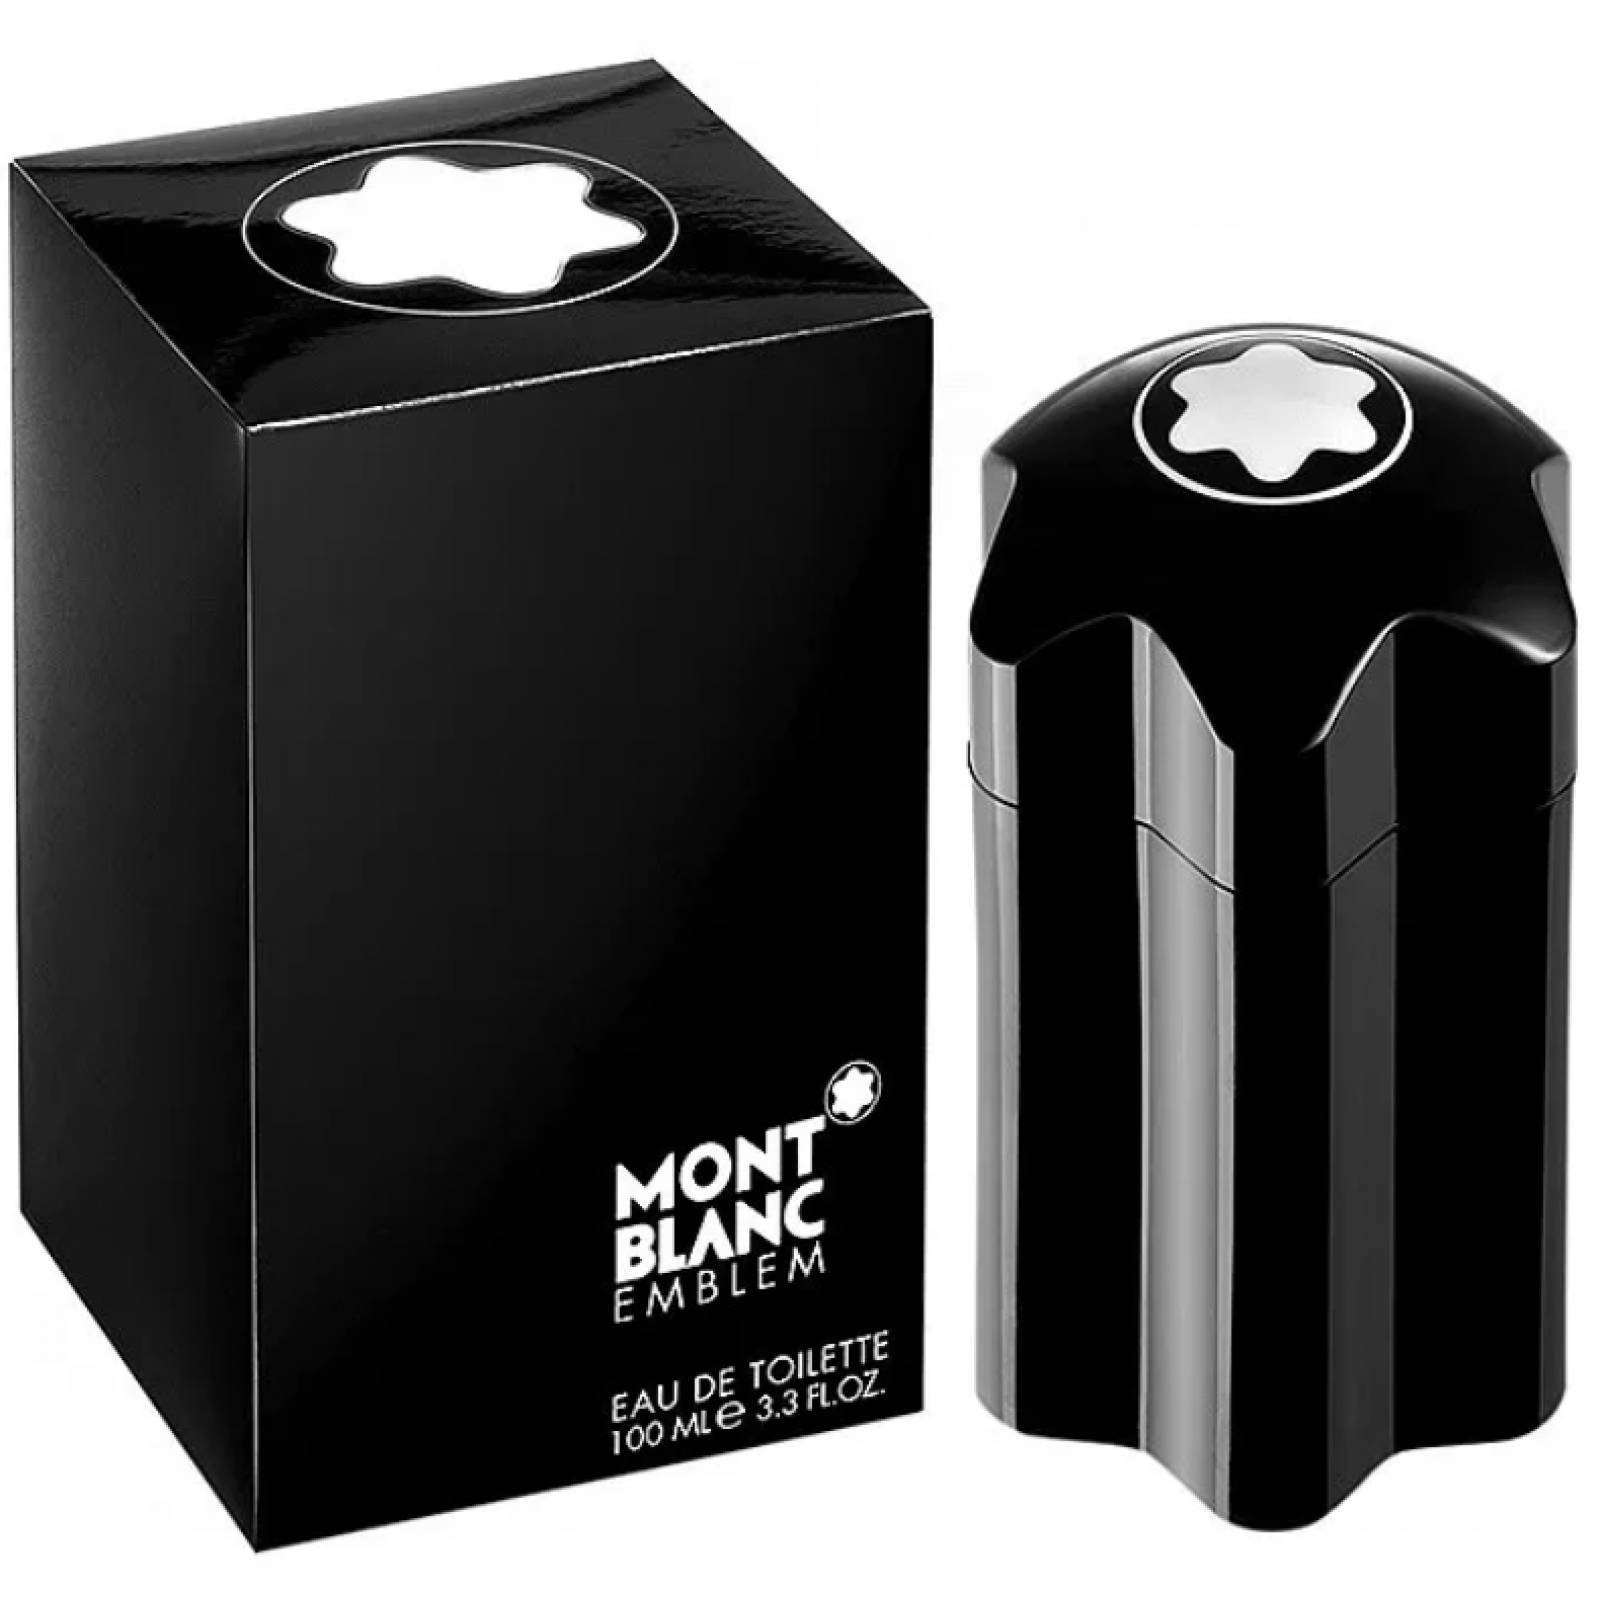 Emblem de Mont Blanc Eau de Toilette 100 ml